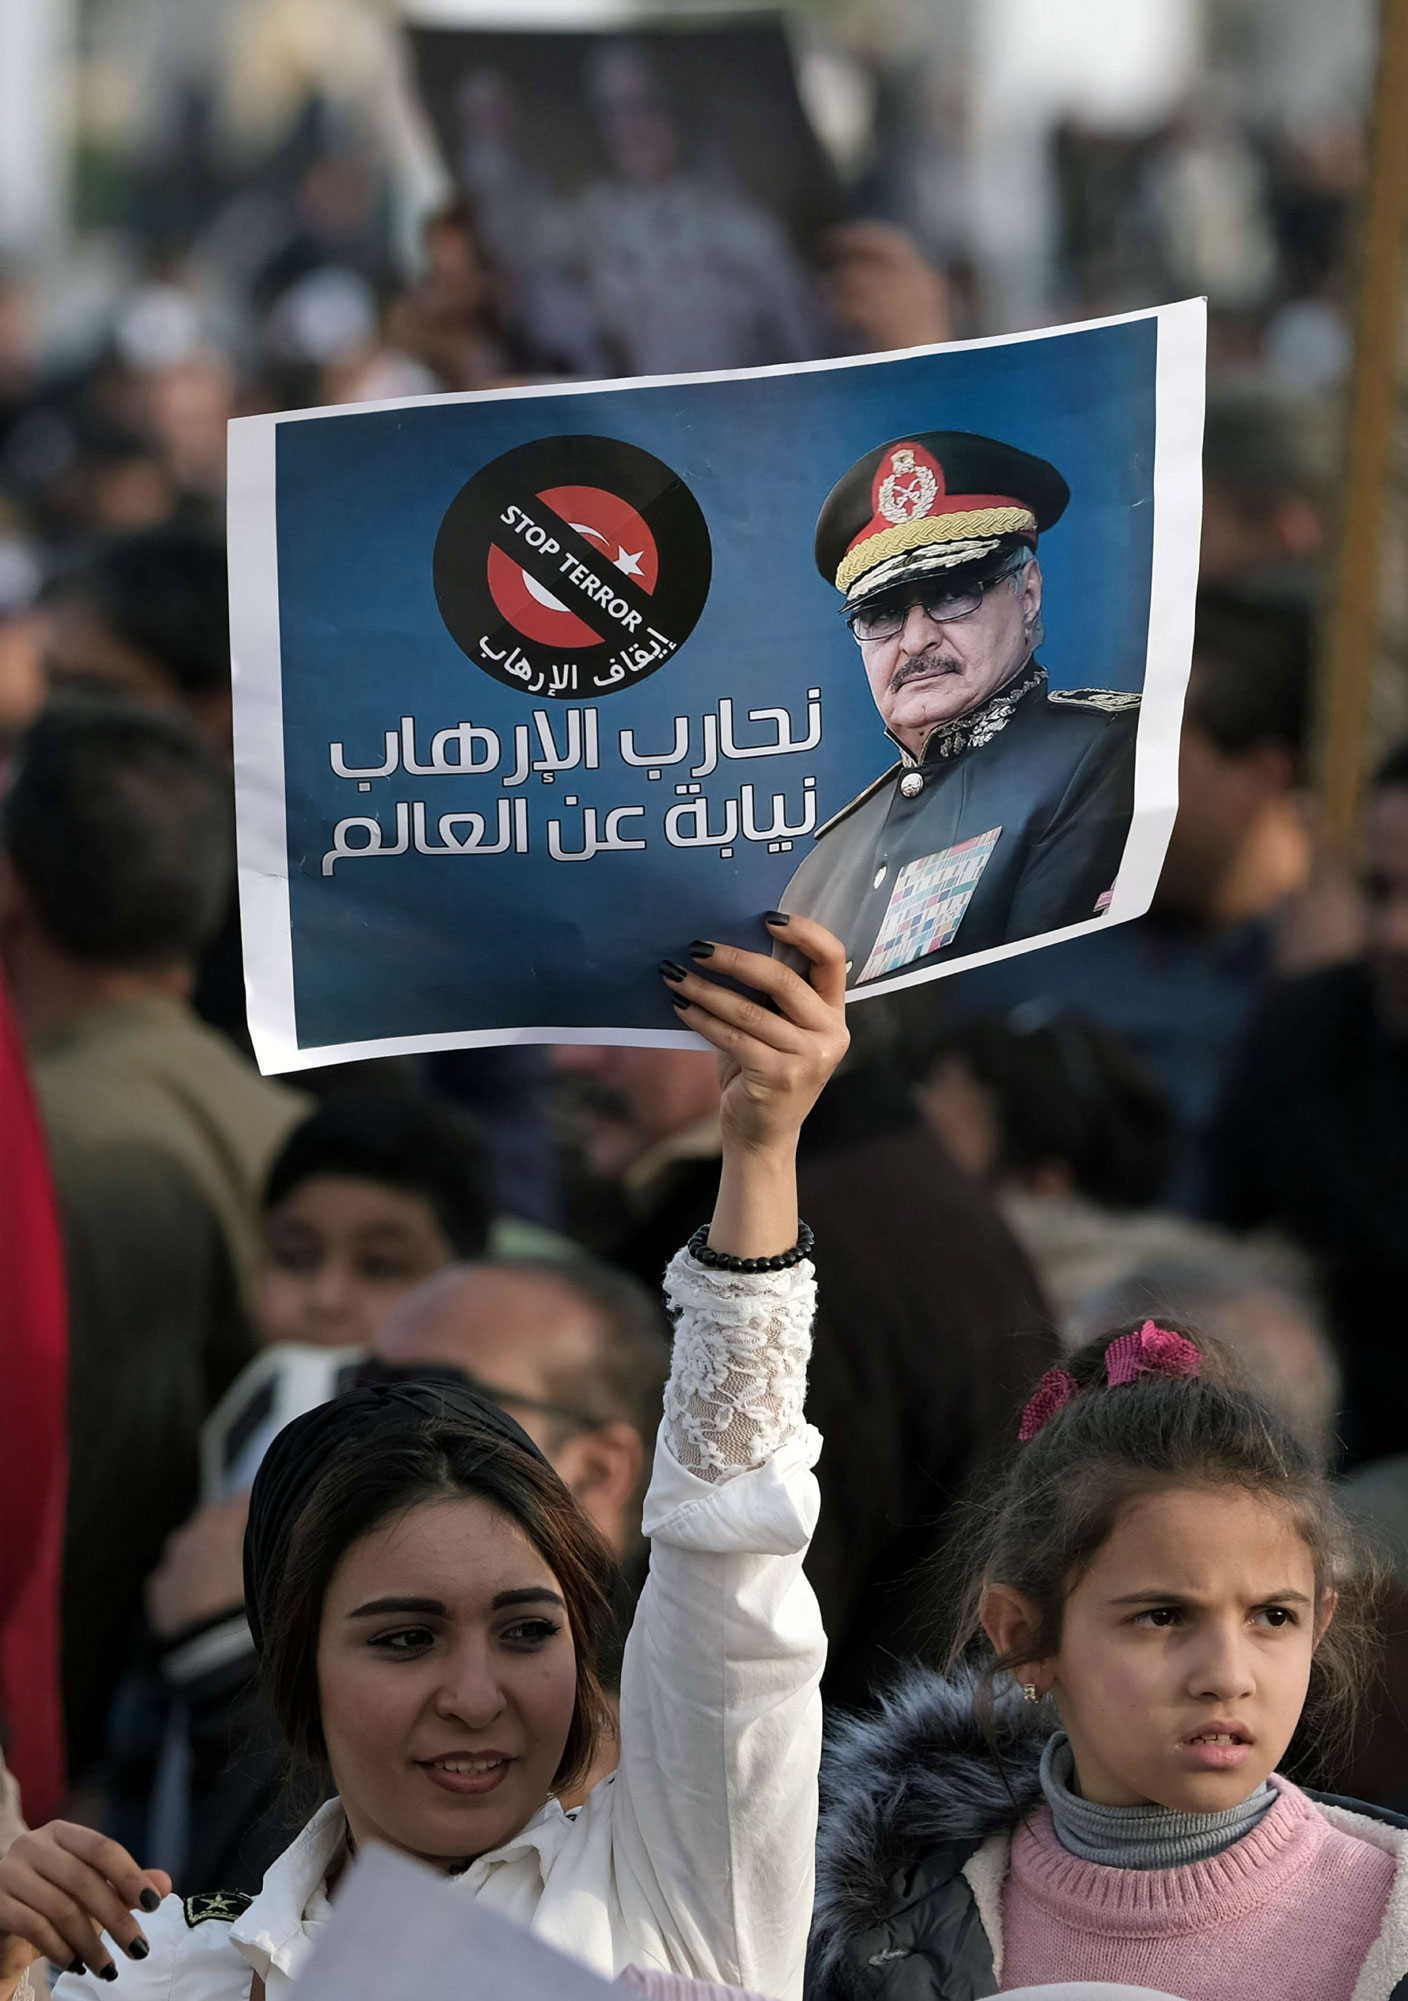 حملة حفتر تتلقى تأييدا شعبيا في مواجهة أطماع اردوغان والاخوان وفي مكافحة الارهاب بغرب ليبيا